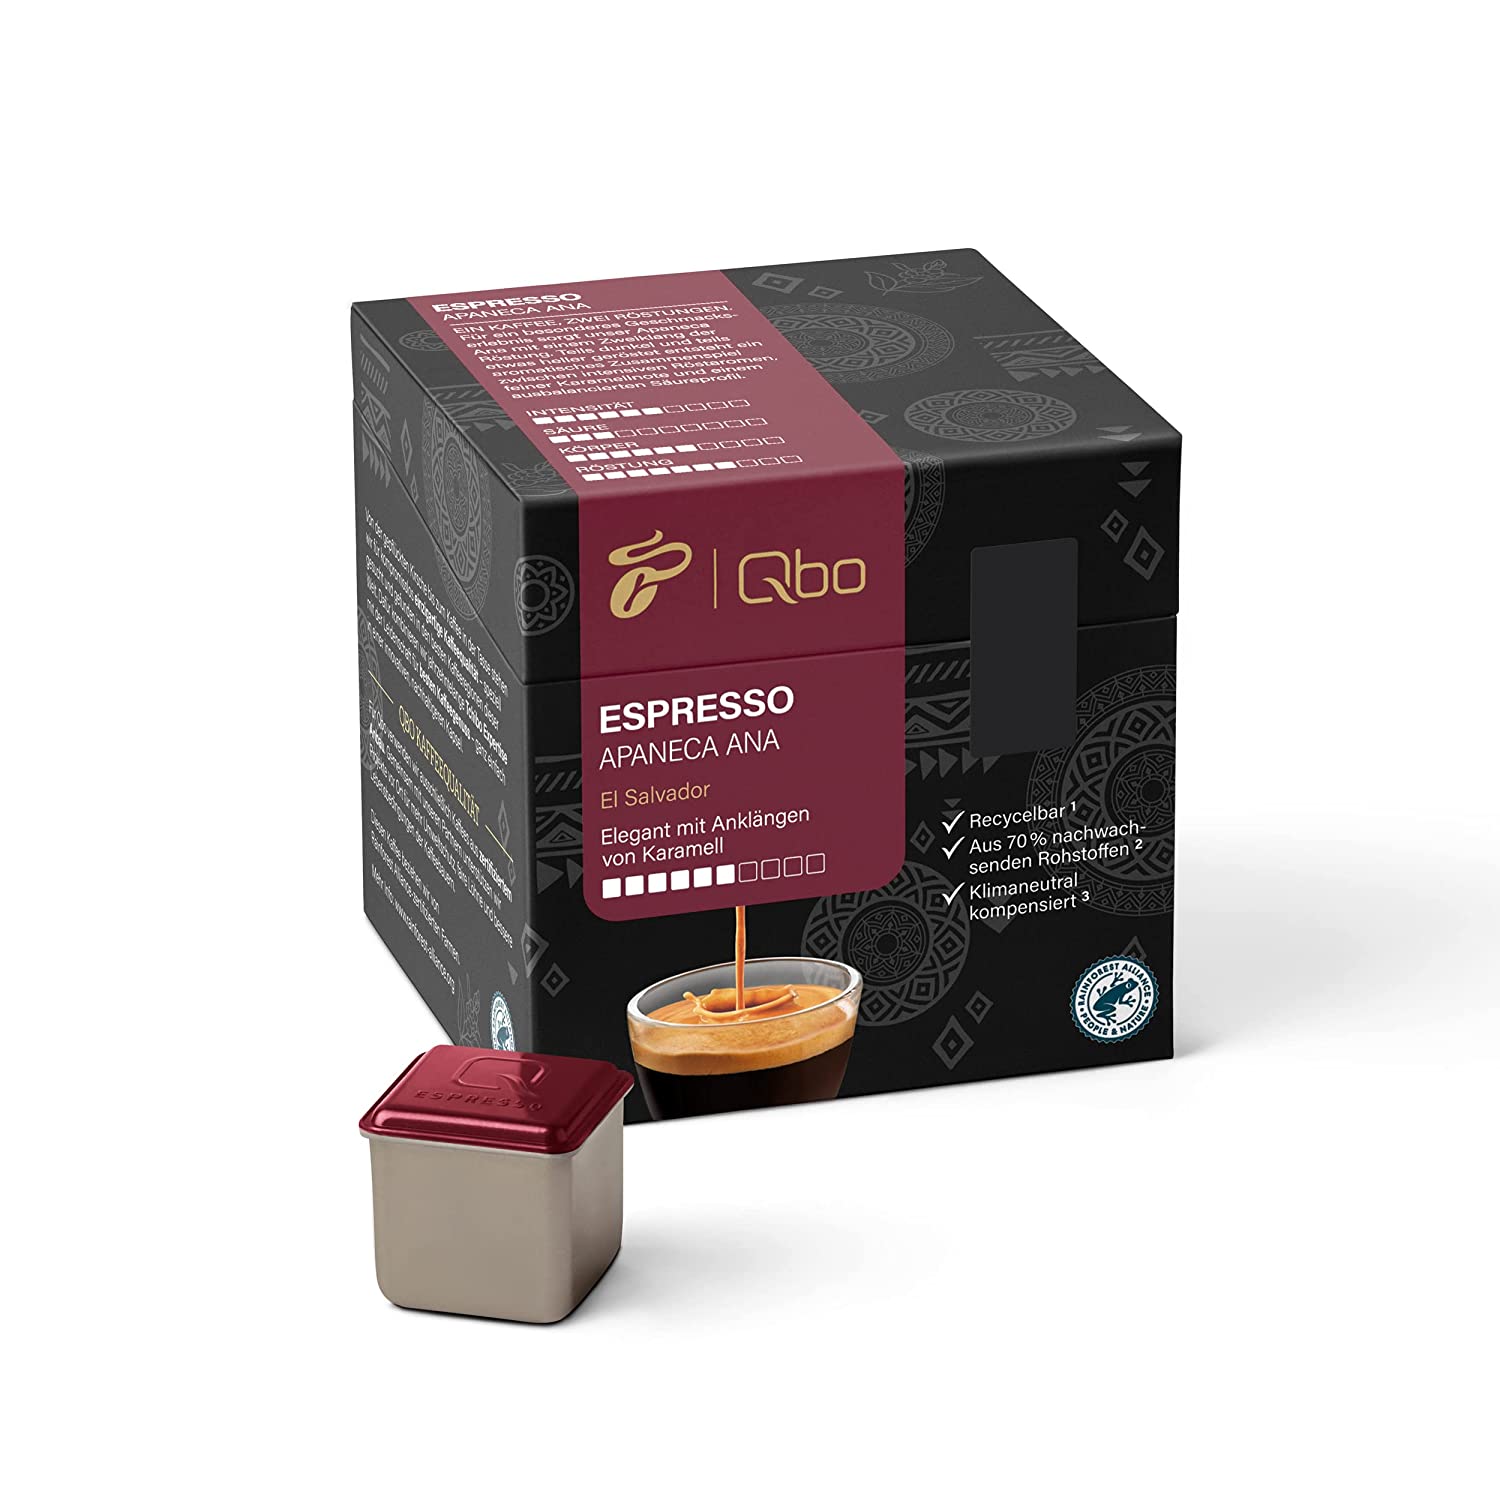 Tchibo Qbo Espresso Apaneca Ana Premium Kaffeekapseln, 27 Stück (Espresso, Intensität 5/10, elegant mit Karamellnote), nachhaltig, aus 70% nachwachsenden Rohstoffen & klimaneutral kompensiert